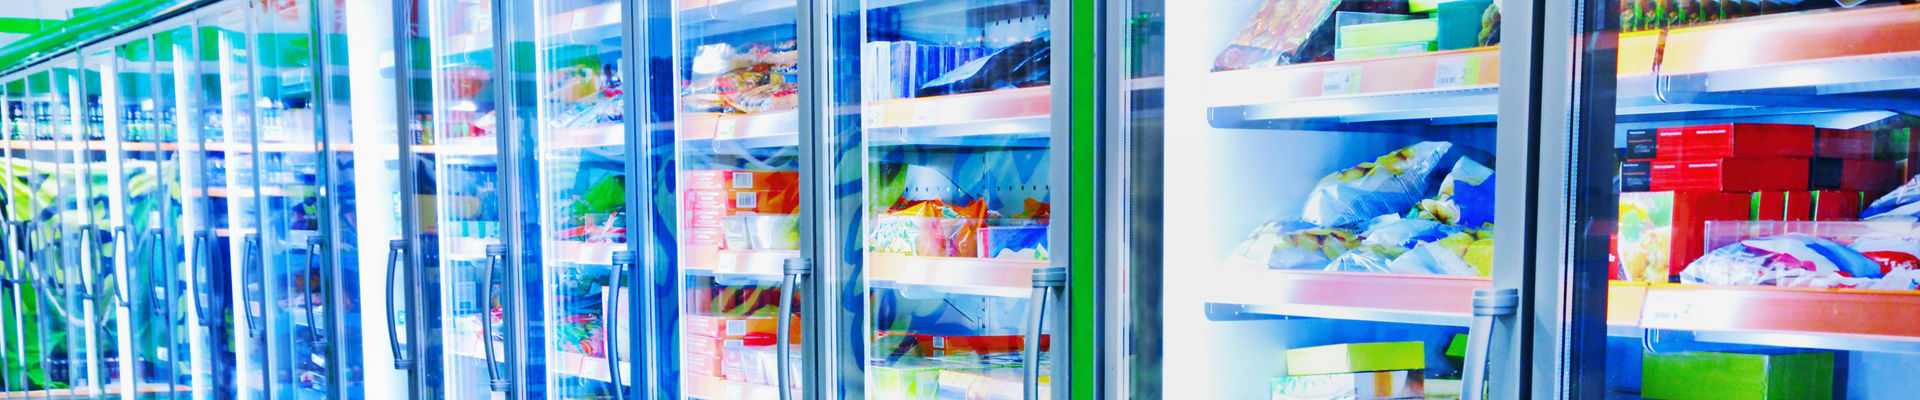 Pasillo de supermercado de productos refrigerados